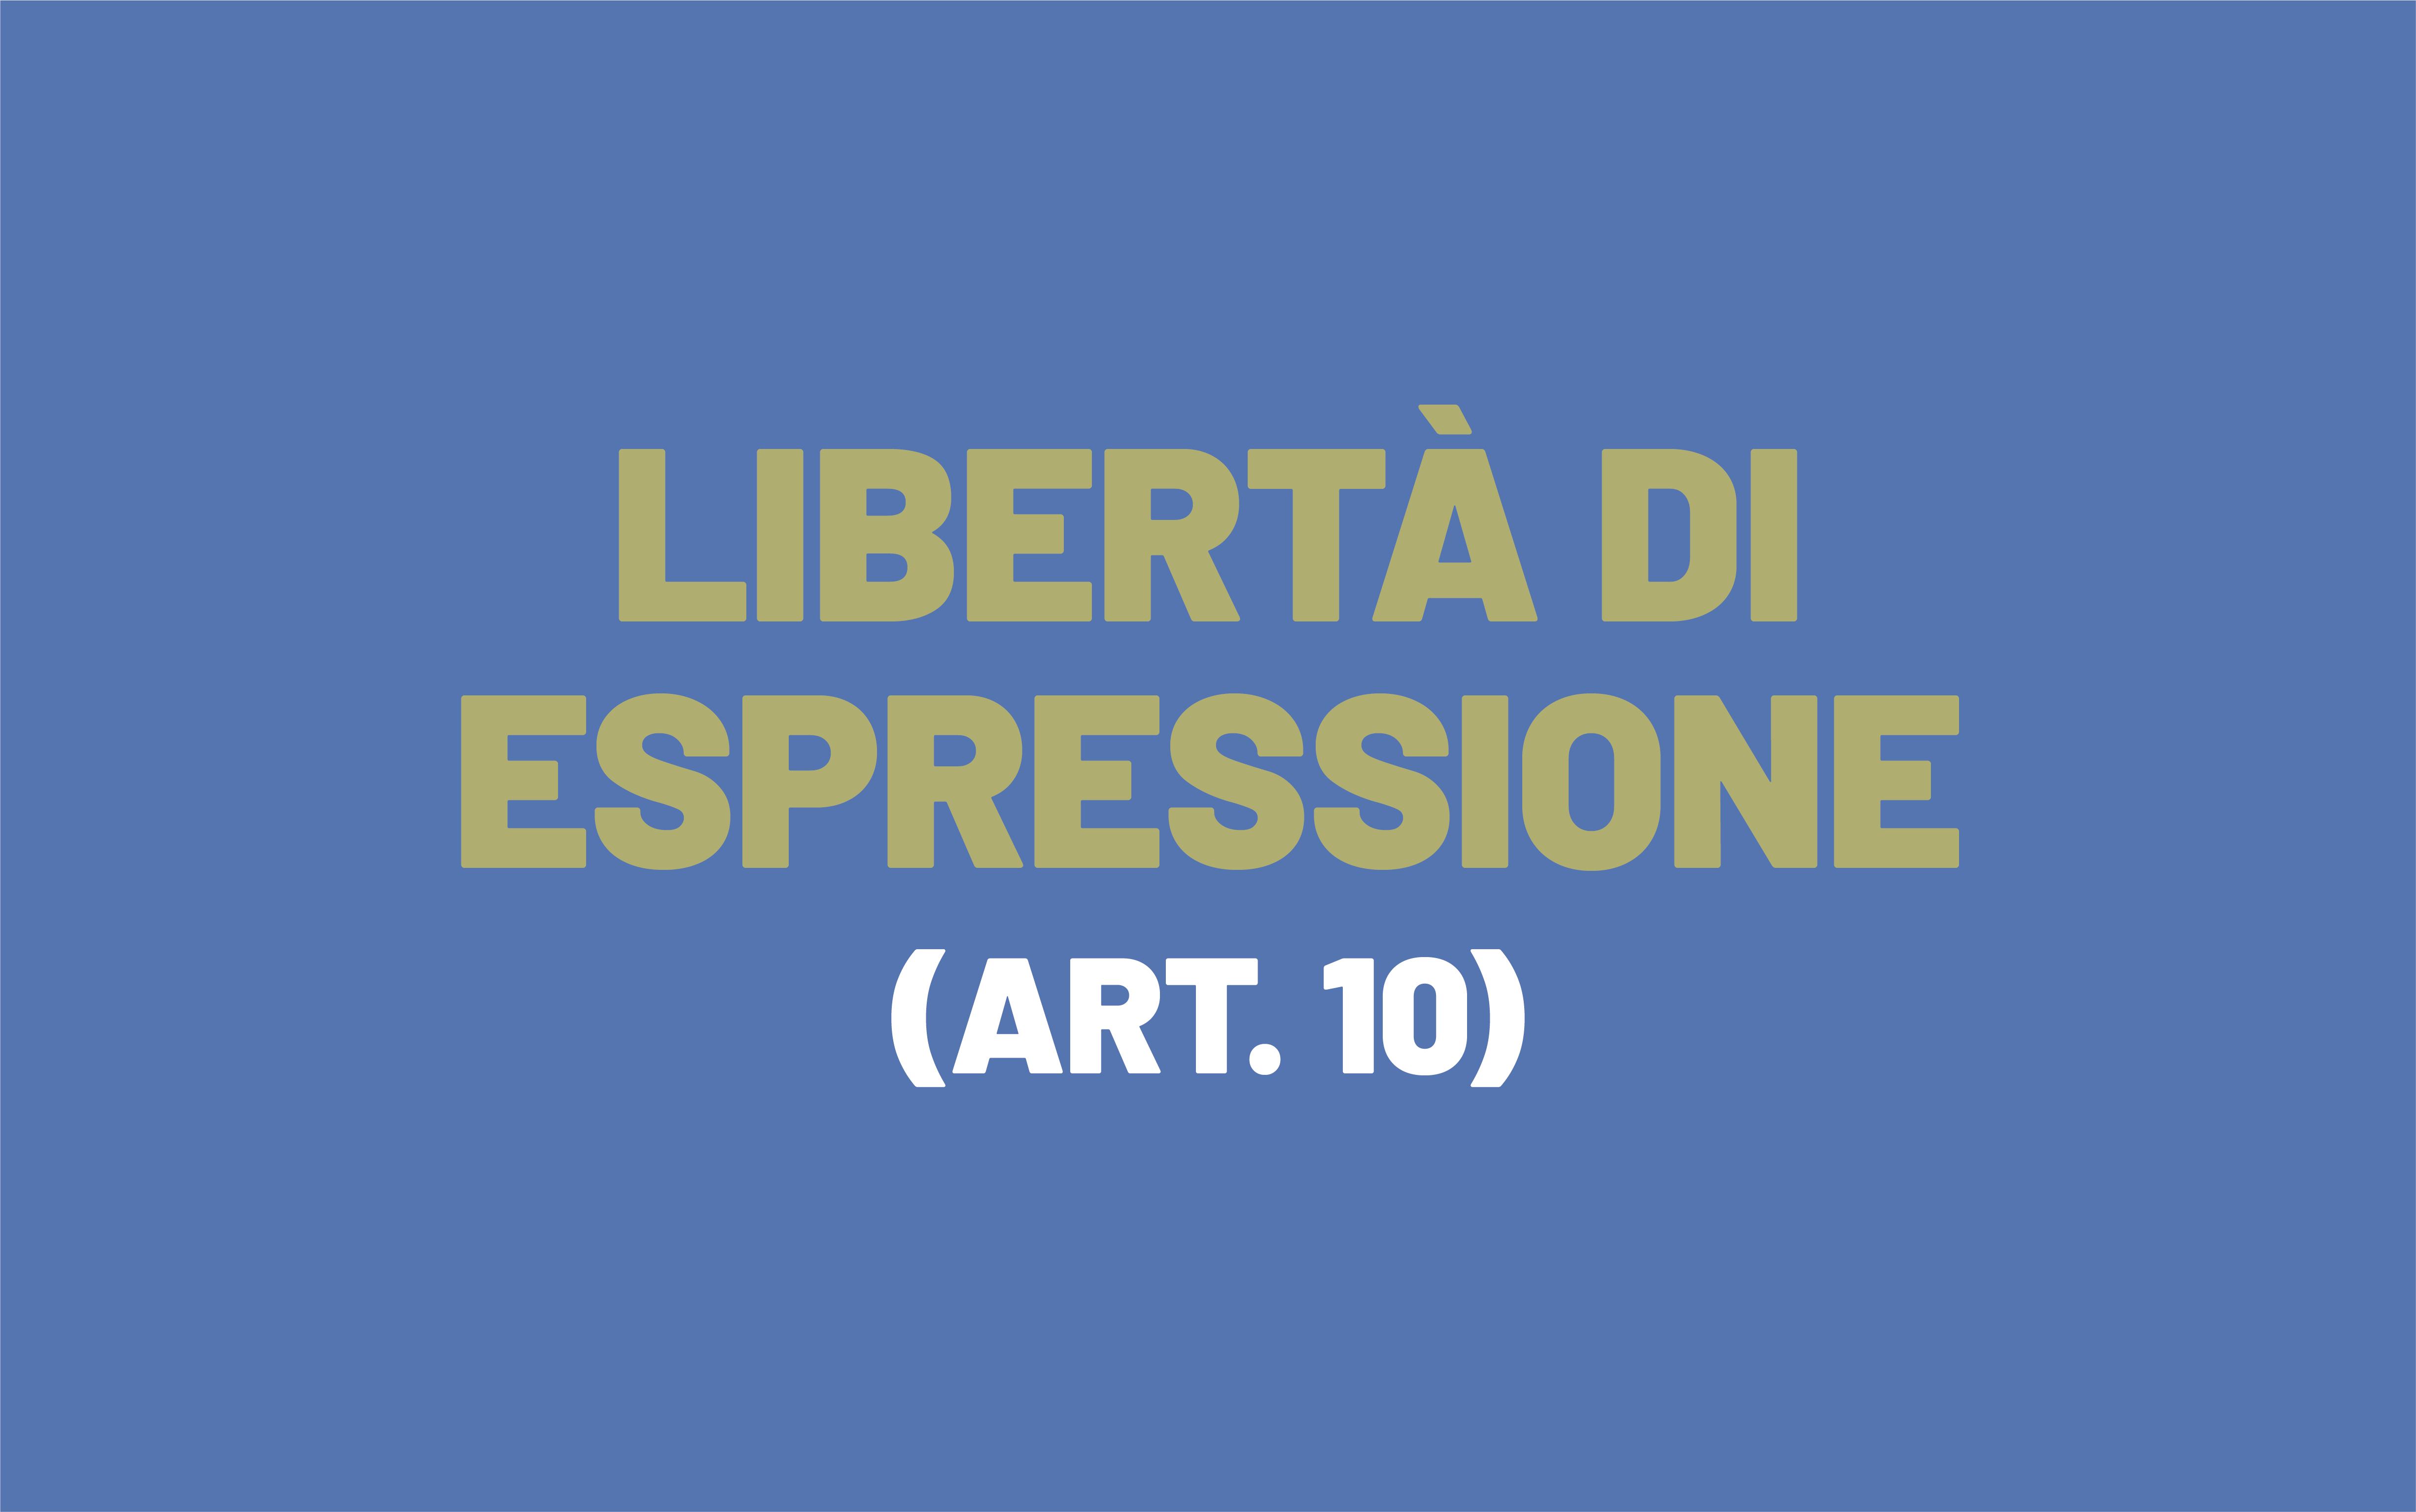 L'immagine è tratta dalla formulazione dell'articolo 10 della Convenzione europea dei diritti dell'uomo, che recita: Libertà di espressione.  